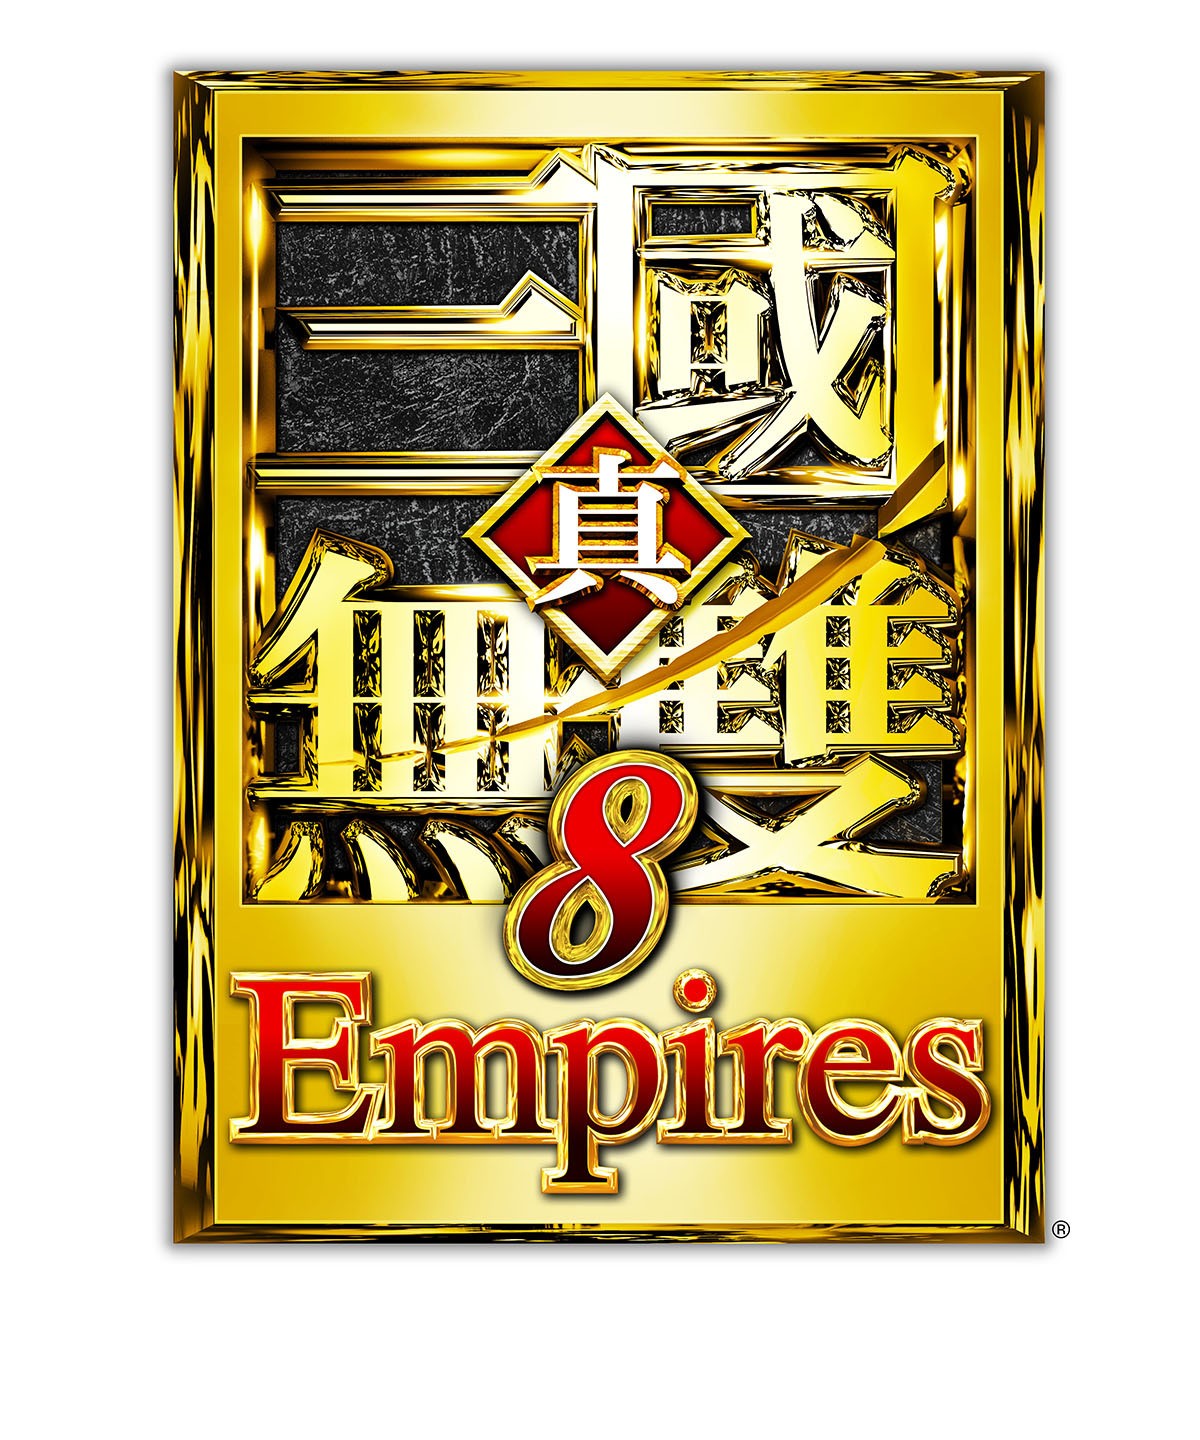 《真‧三國無雙 8 Empires》今日發售 歡慶上市贈獎活動同步開跑